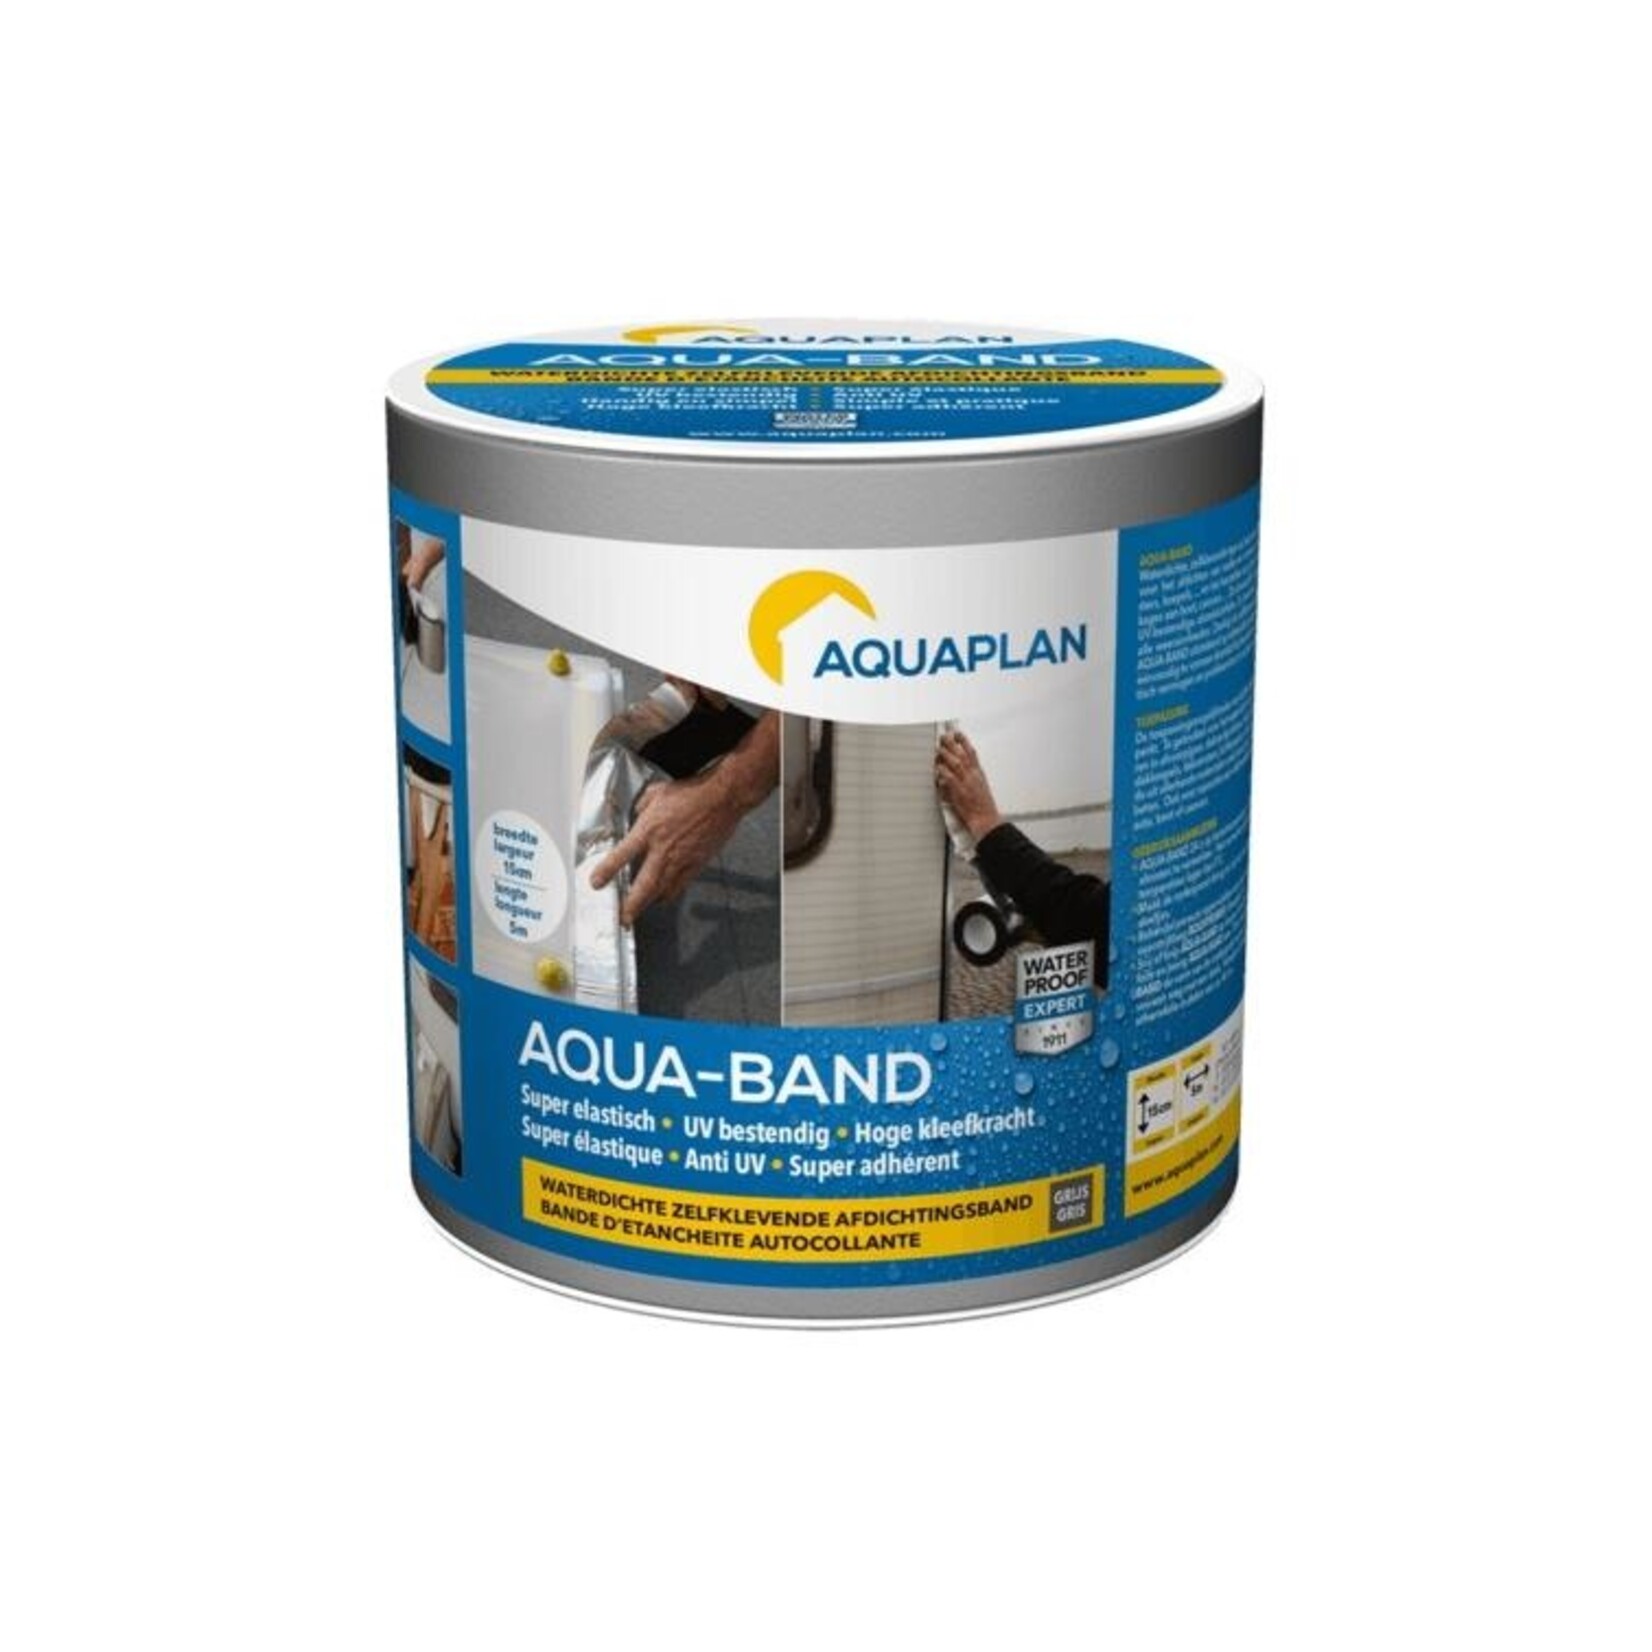 Aquaplan Aqua-Band Loopband  5 m X 10 cm